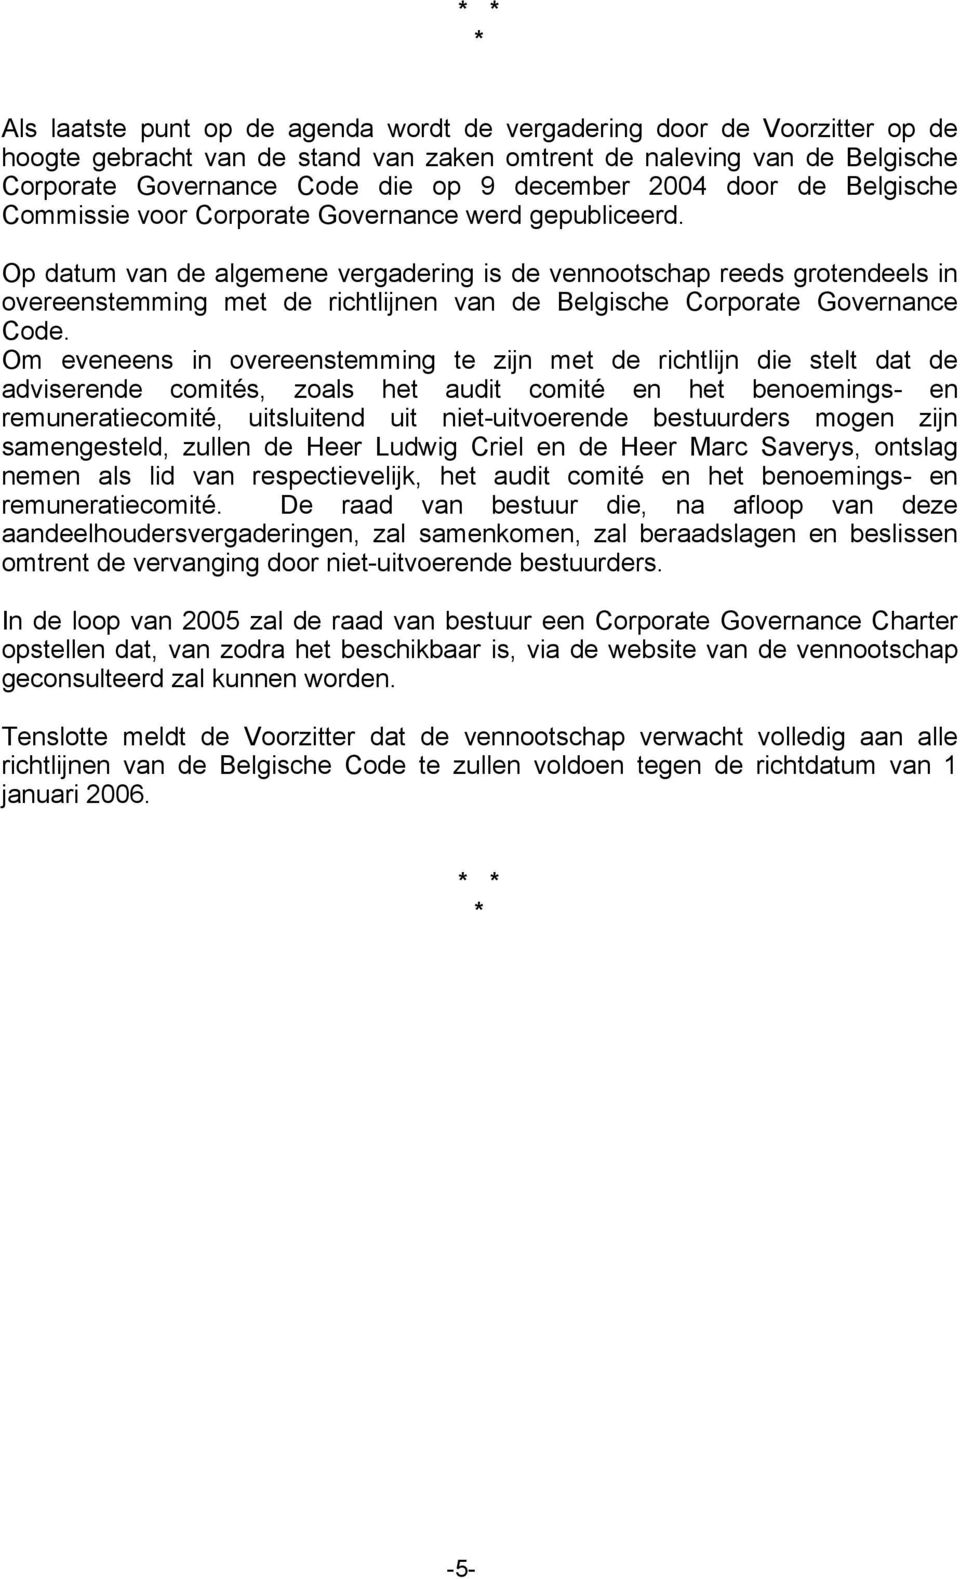 Op datum van de algemene vergadering is de vennootschap reeds grotendeels in overeenstemming met de richtlijnen van de Belgische Corporate Governance Code.